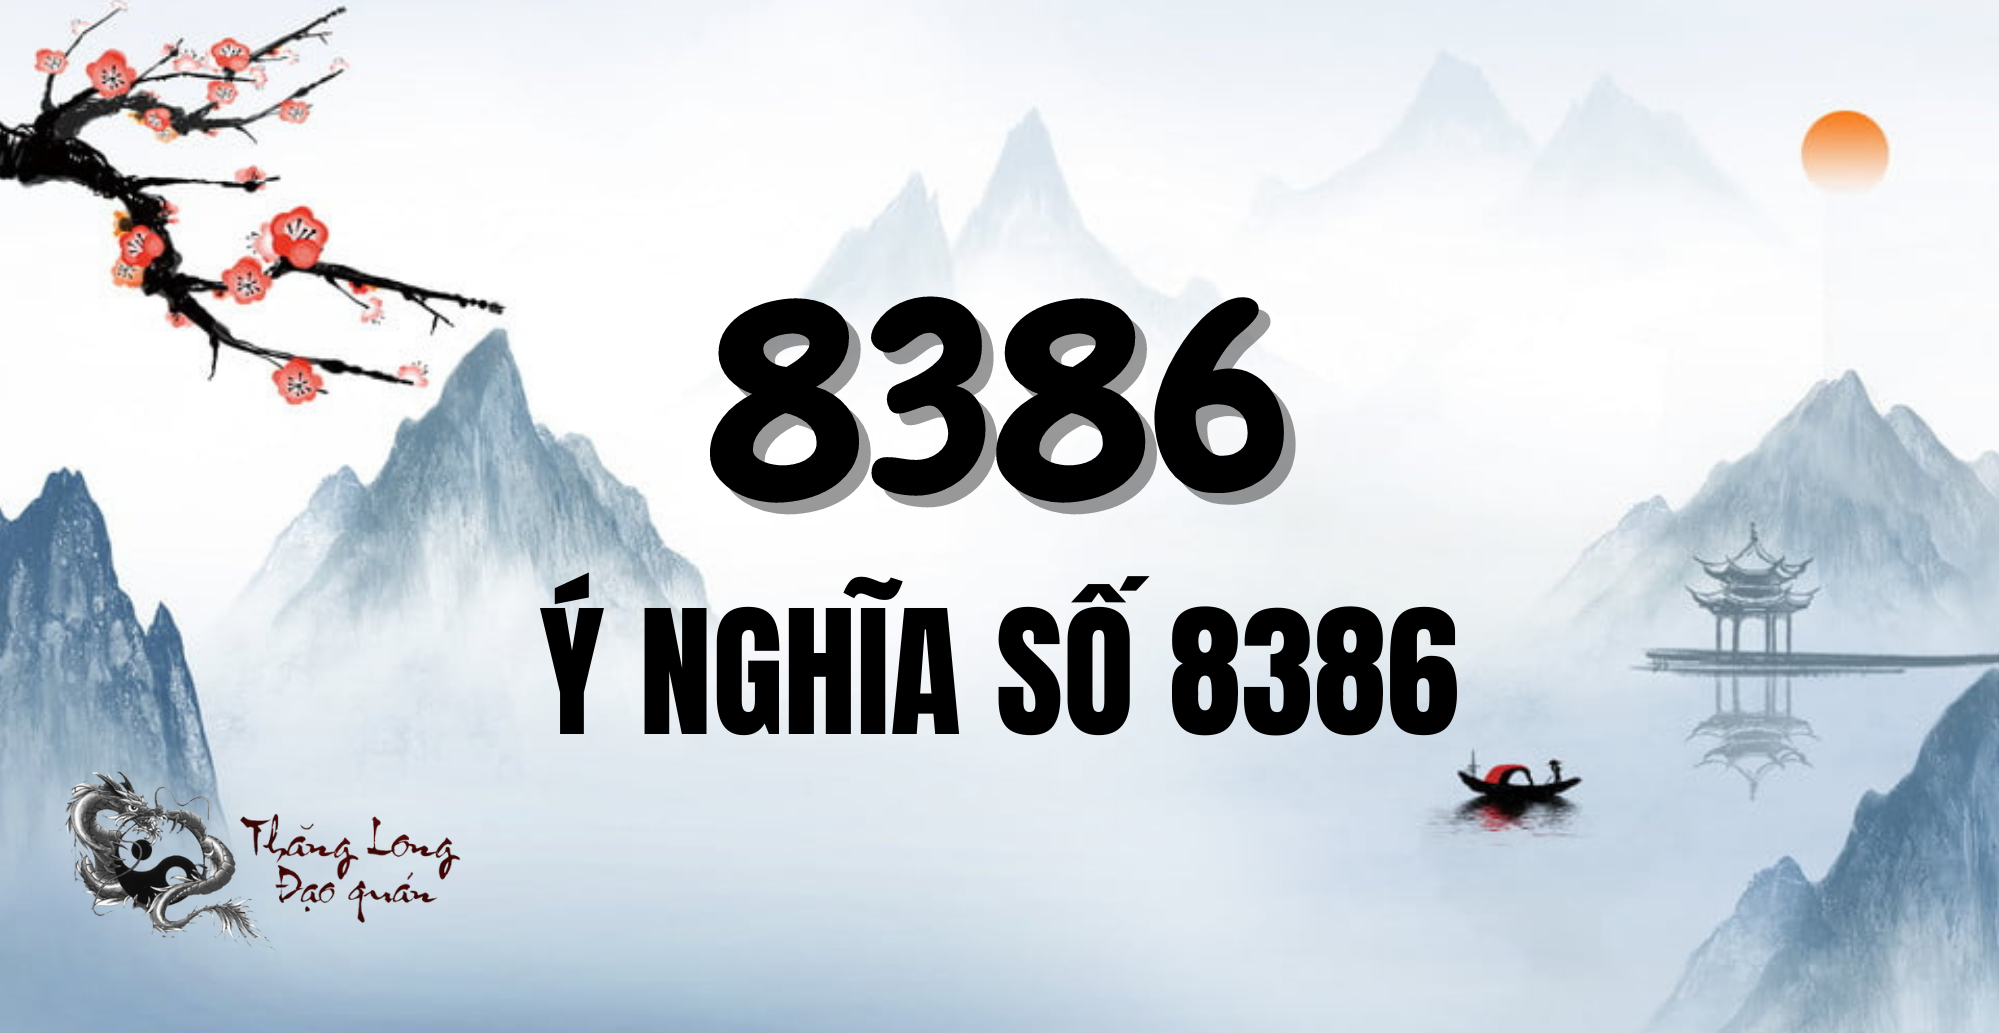 y-nghia-so-8386